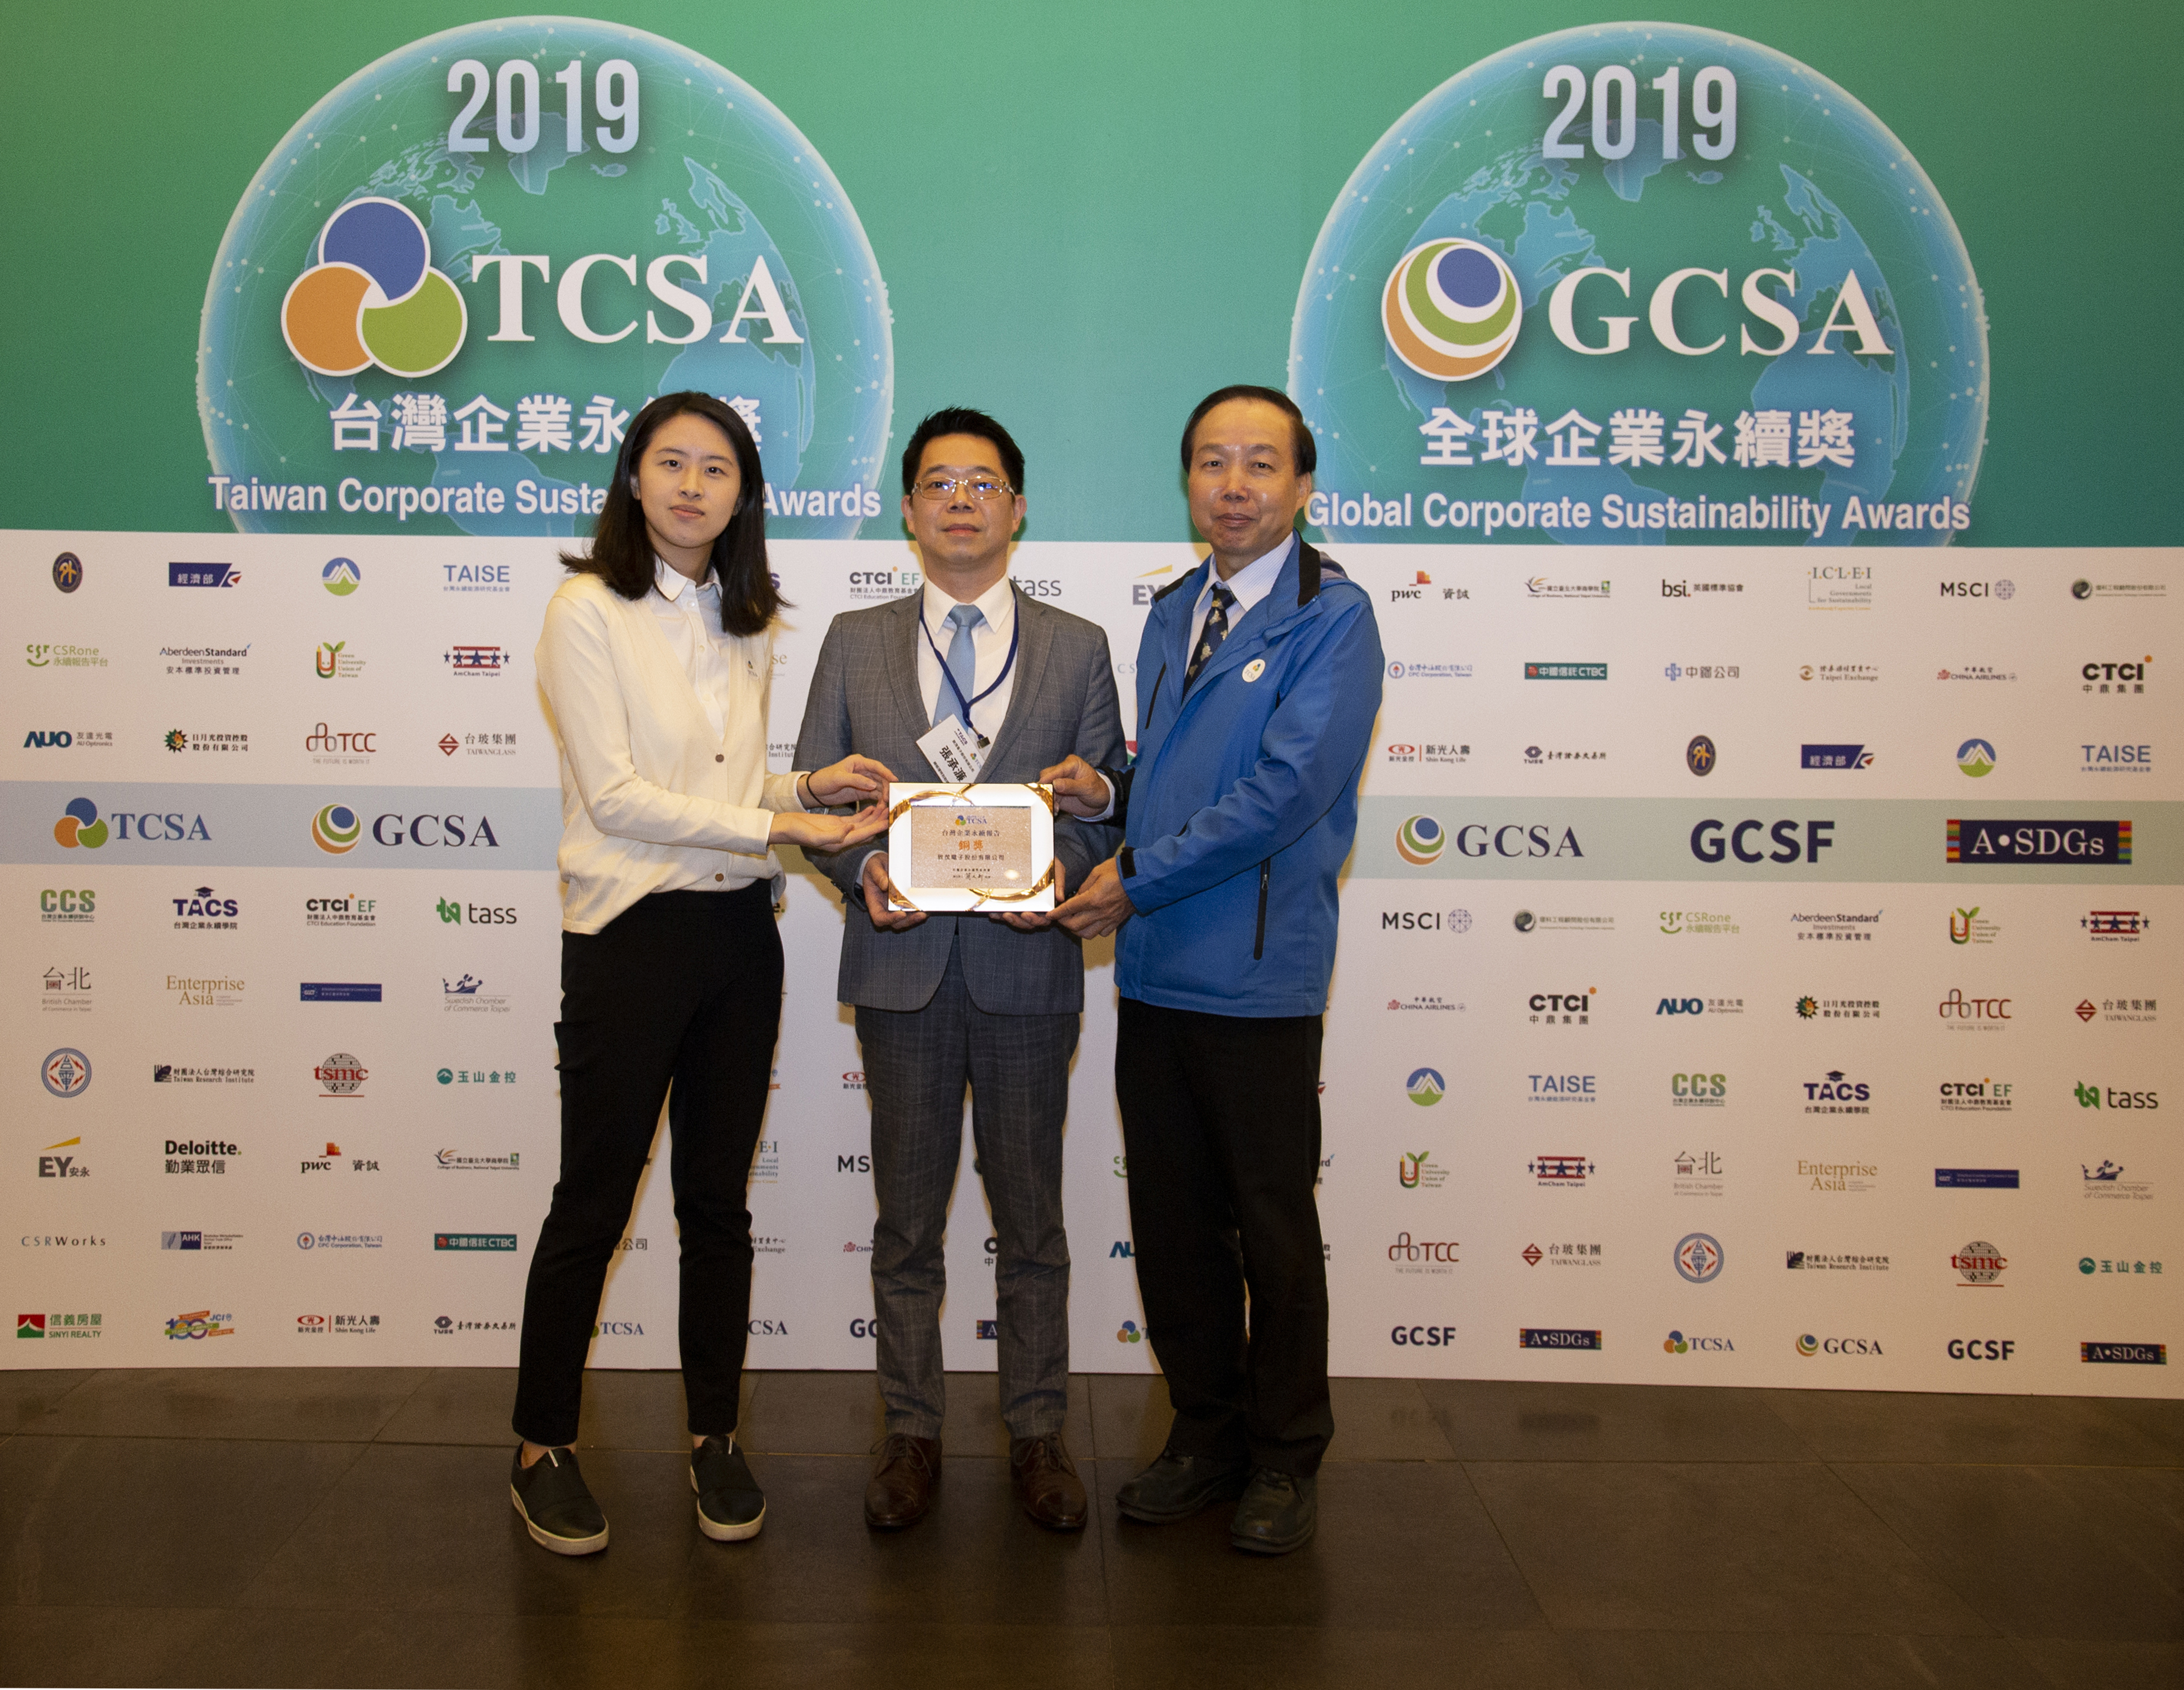 Chroma Wins Bronze at 2019 TCSA Awards